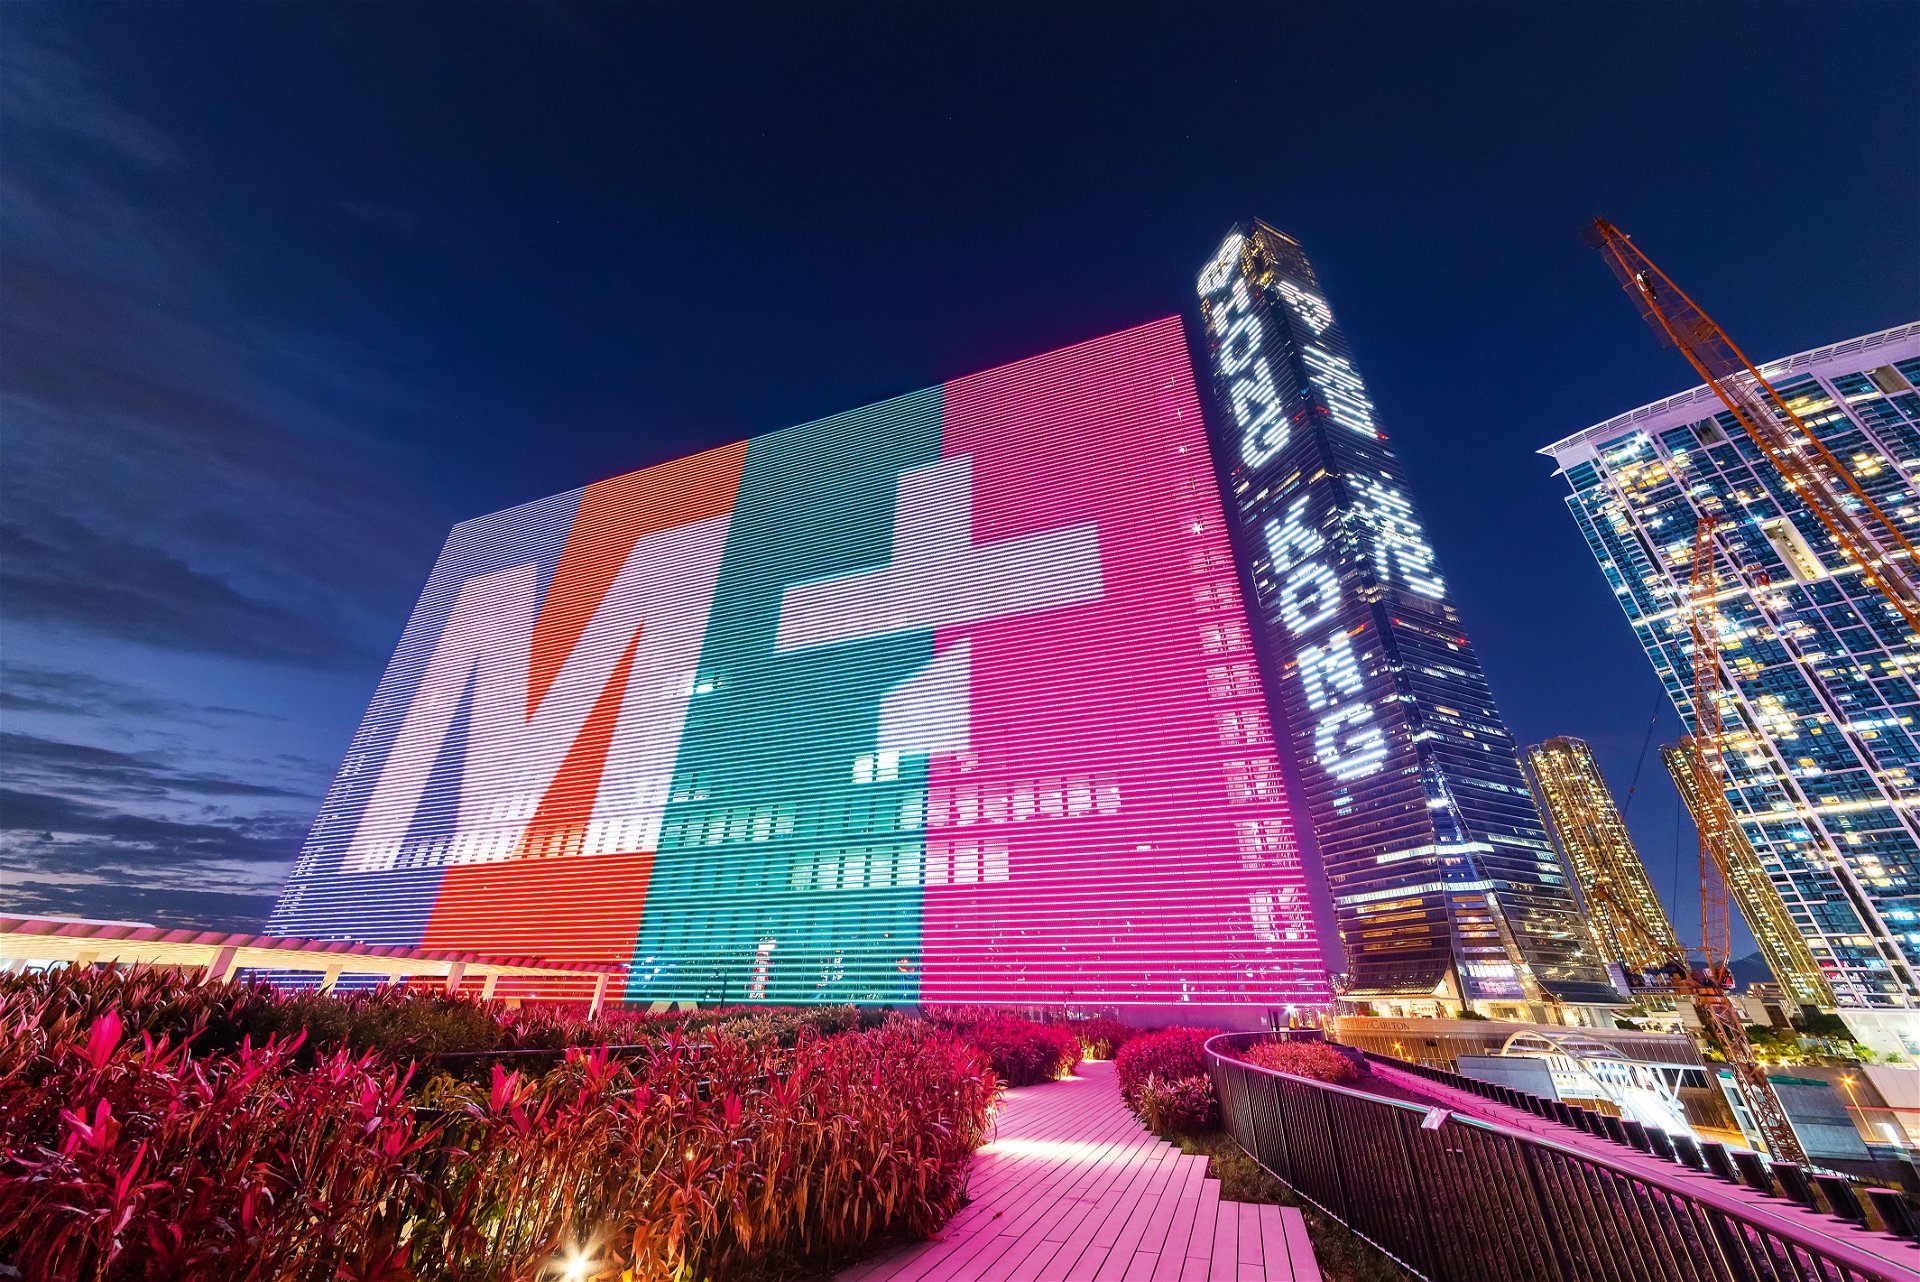 Alles auf dem Schirm: Das neue M+ ist das stolze 
Flaggschiff der modernen Kunst in Hongkongs Museumslandschaft.